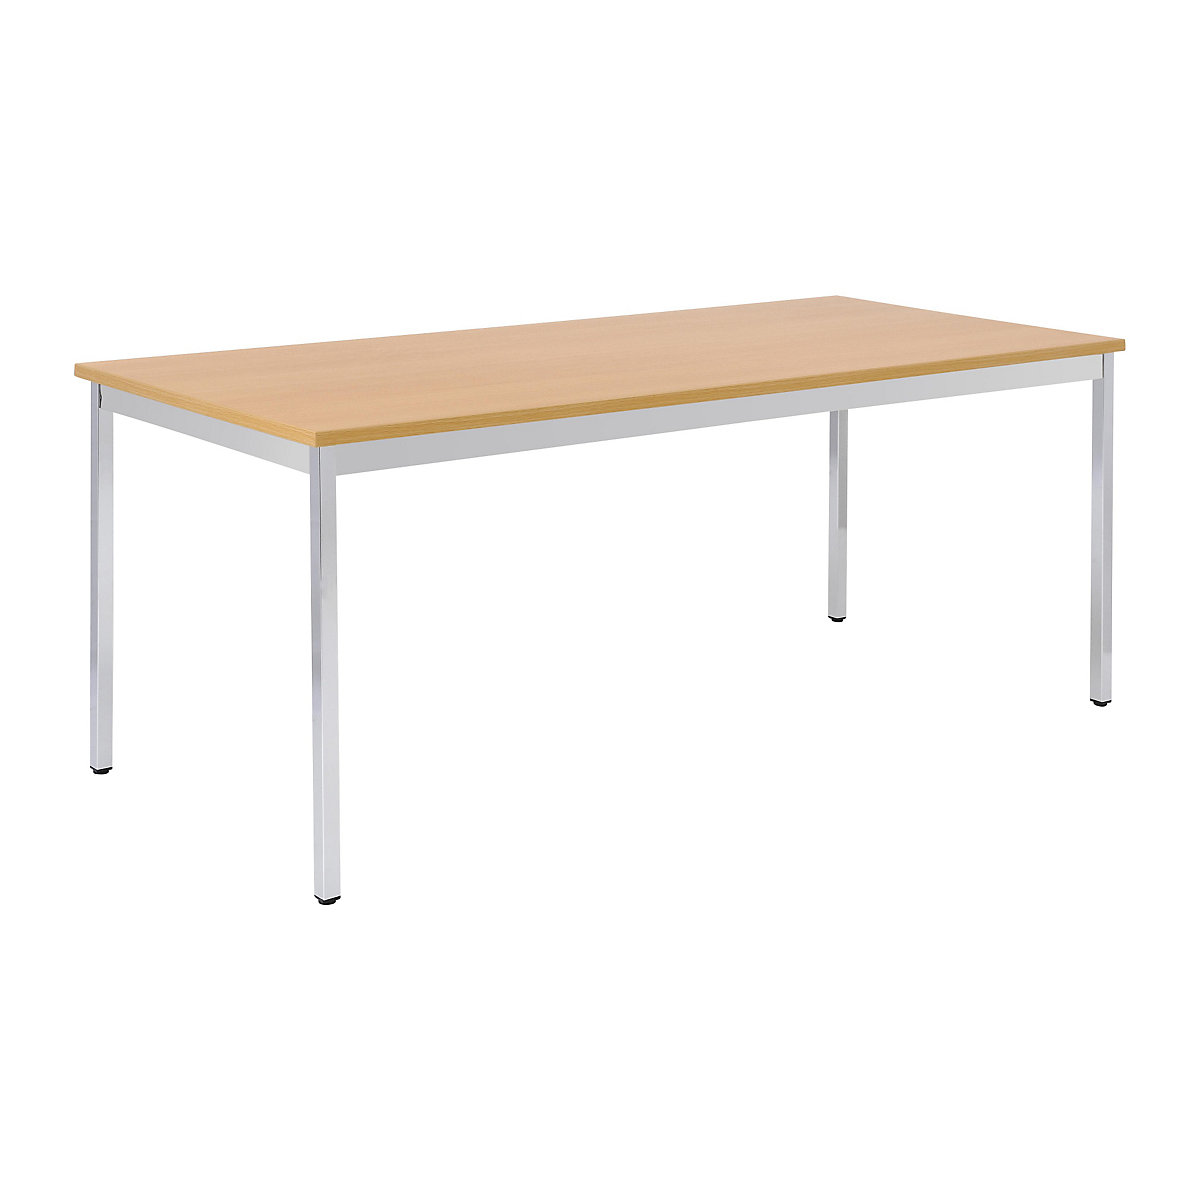 Table polyvalente – eurokraft basic, rectangulaire, l x h 1200 x 740 mm, profondeur 800 mm, plateau façon hêtre, piétement chromé-20